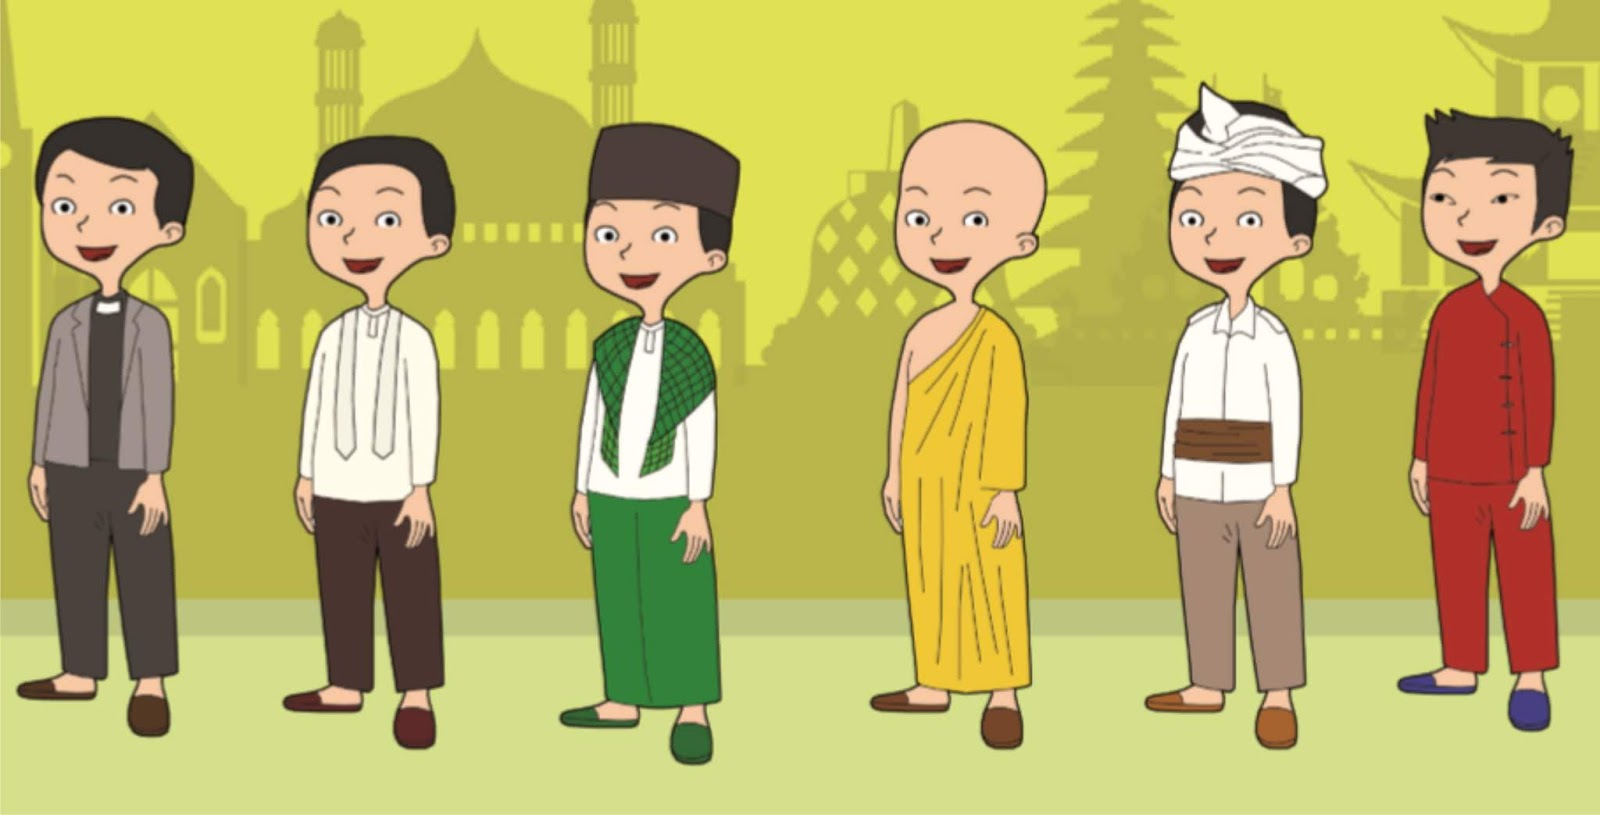 Di Indonesia, diakui adanya enam agama resmi, yaitu Hindu, Buddha, Islam, Katolik, Kristen, dan Konghucu. 